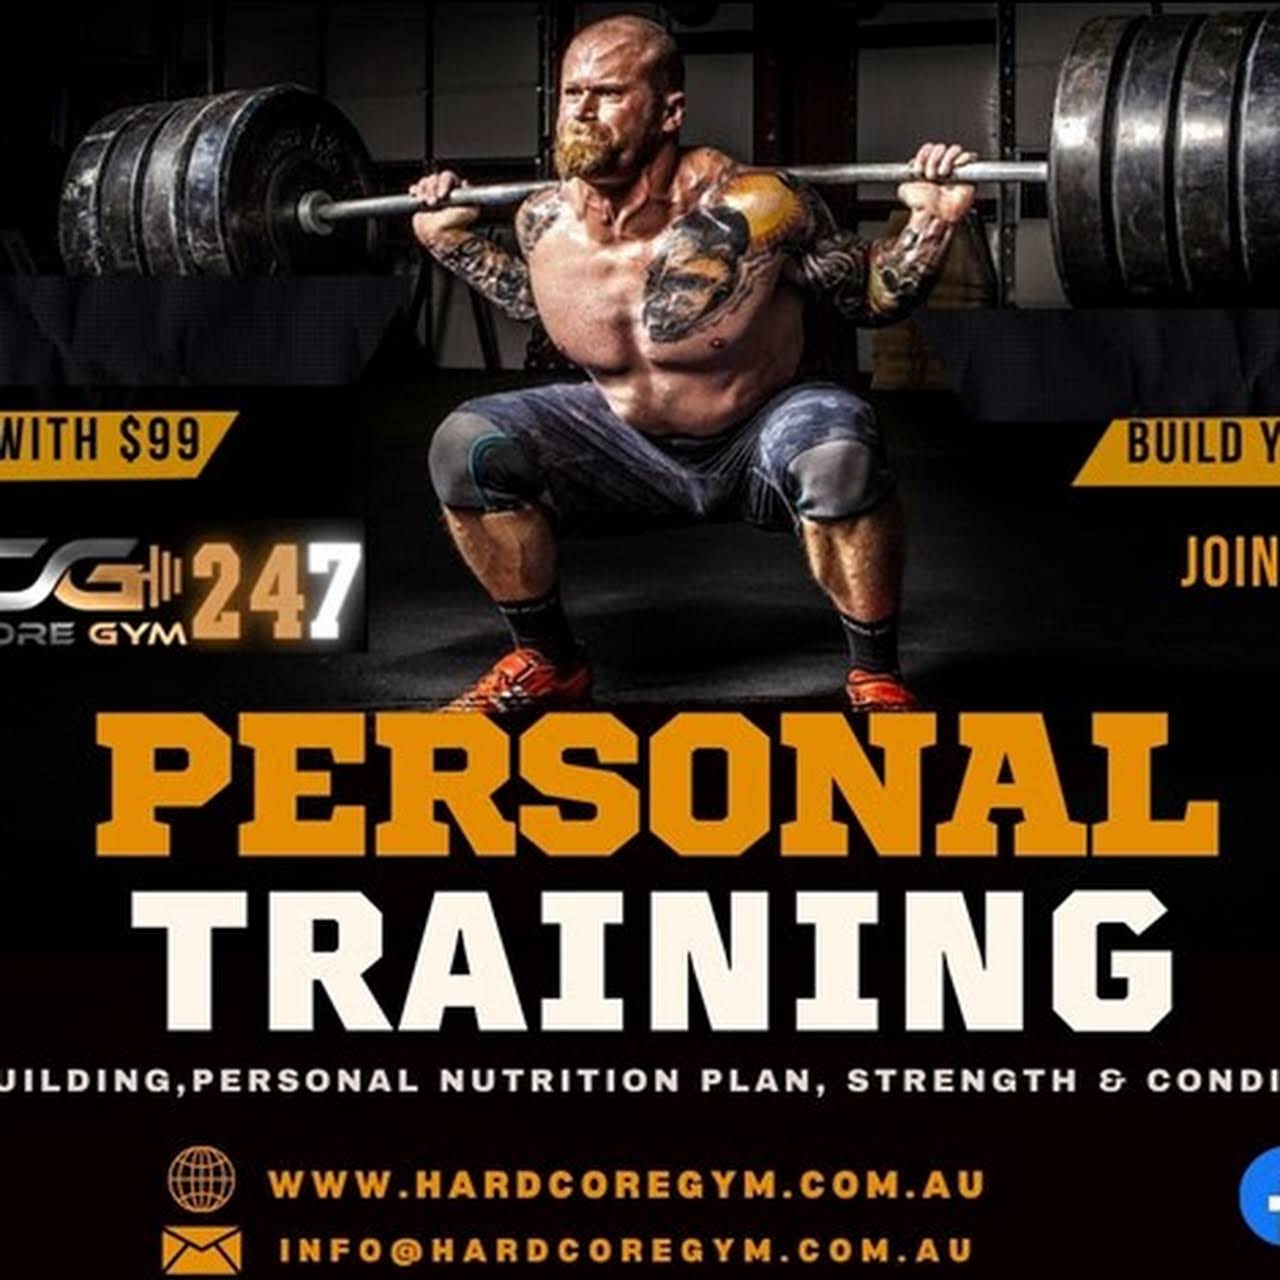 Hardcore training gym